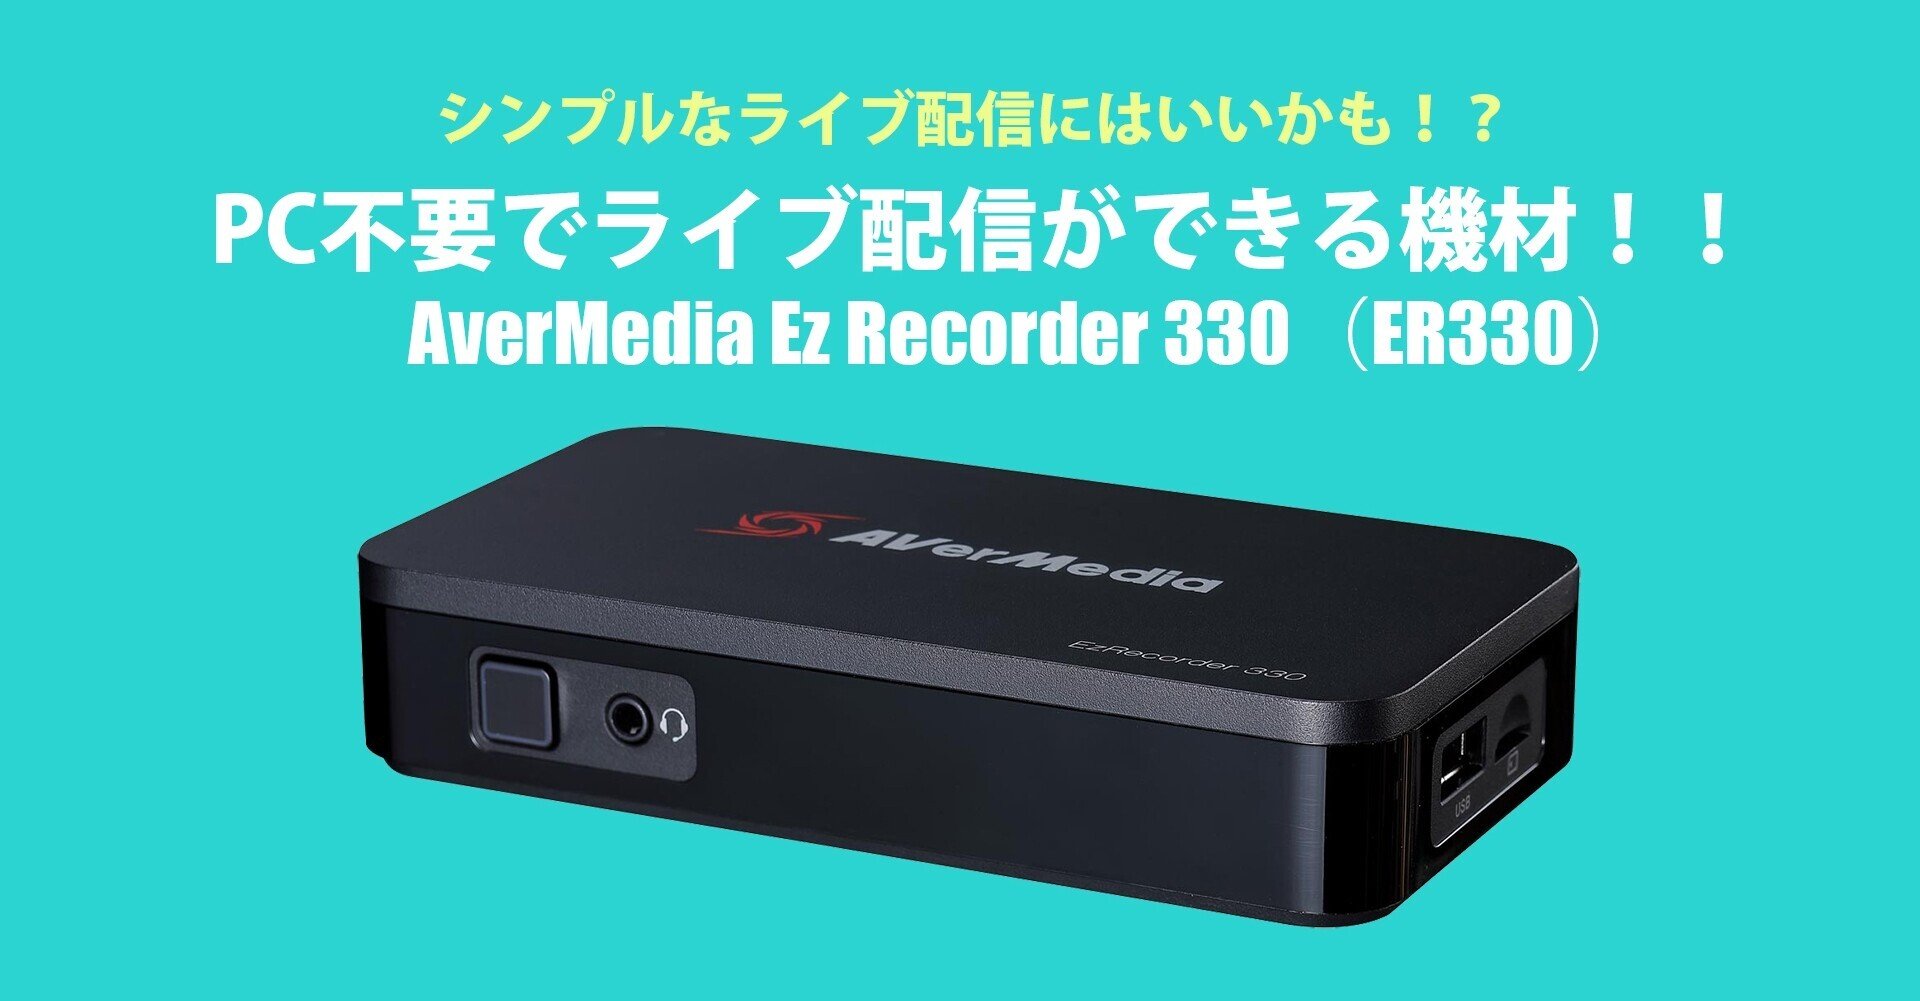 AverMedia Ez Recorder 330（ER330）/PC不要でライブ配信ができる機材 ...